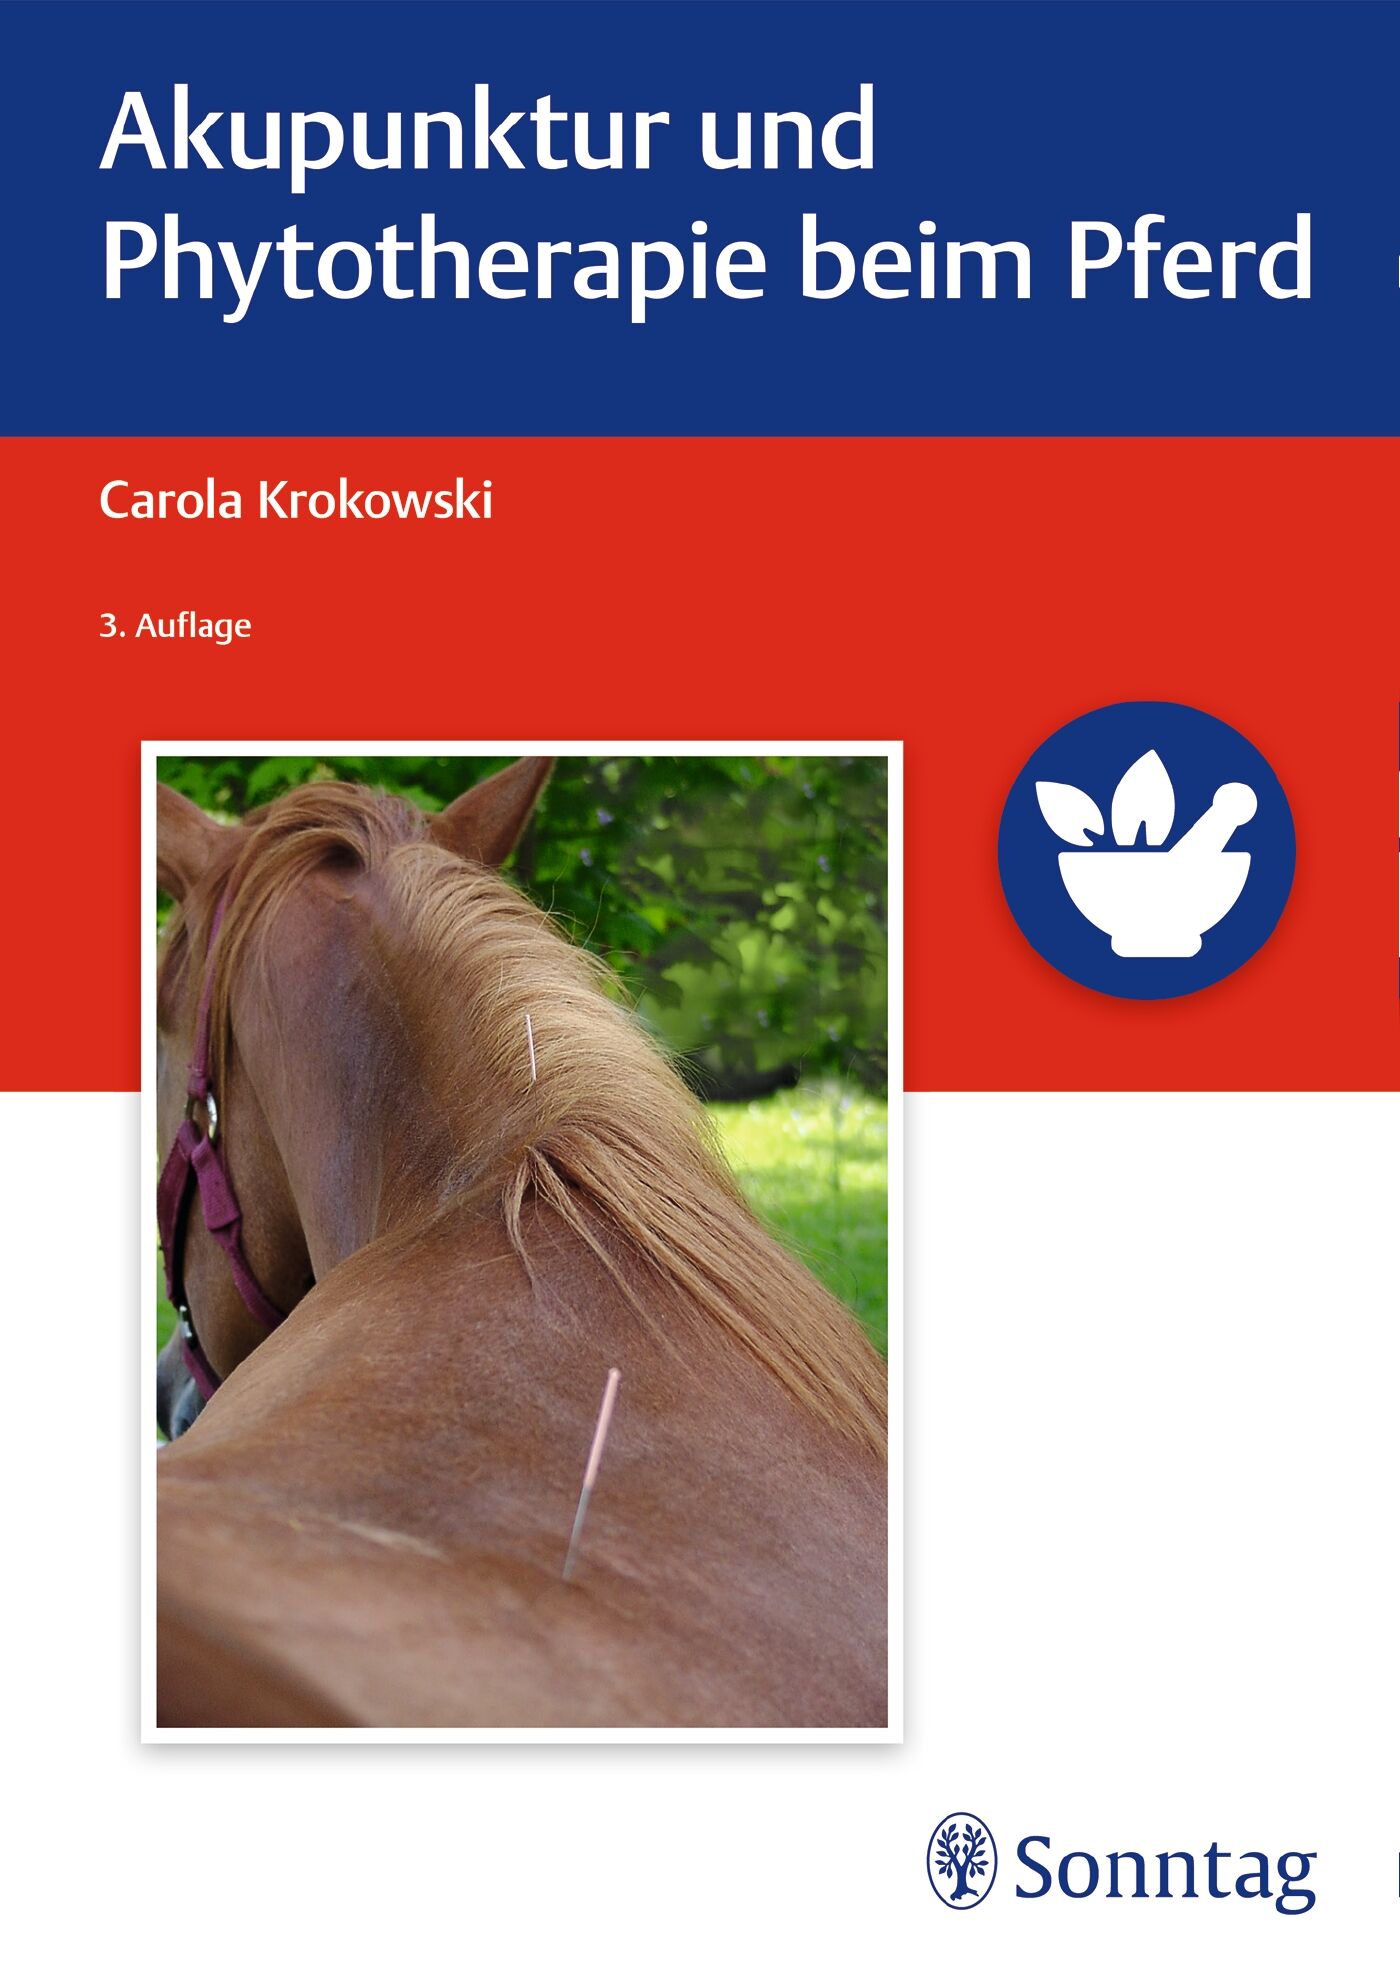 Akupunktur und Phytotherapie beim Pferd, 9783132415966